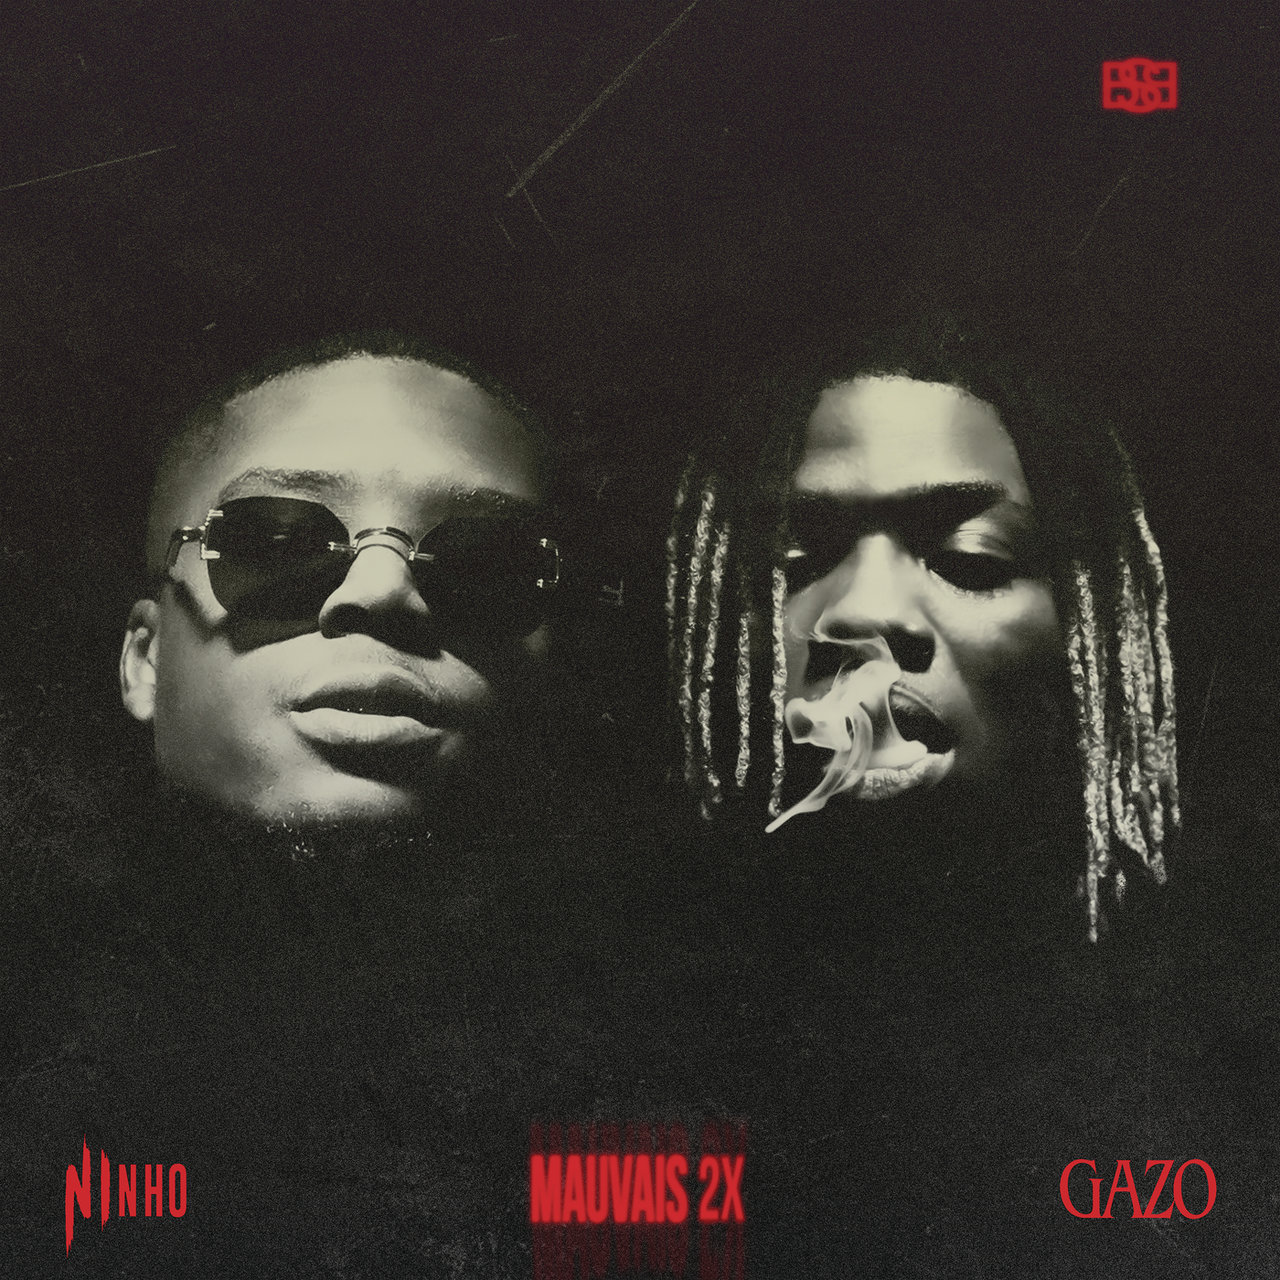 Gazo - Mauvais 2x (ft. Ninho) (Cover)